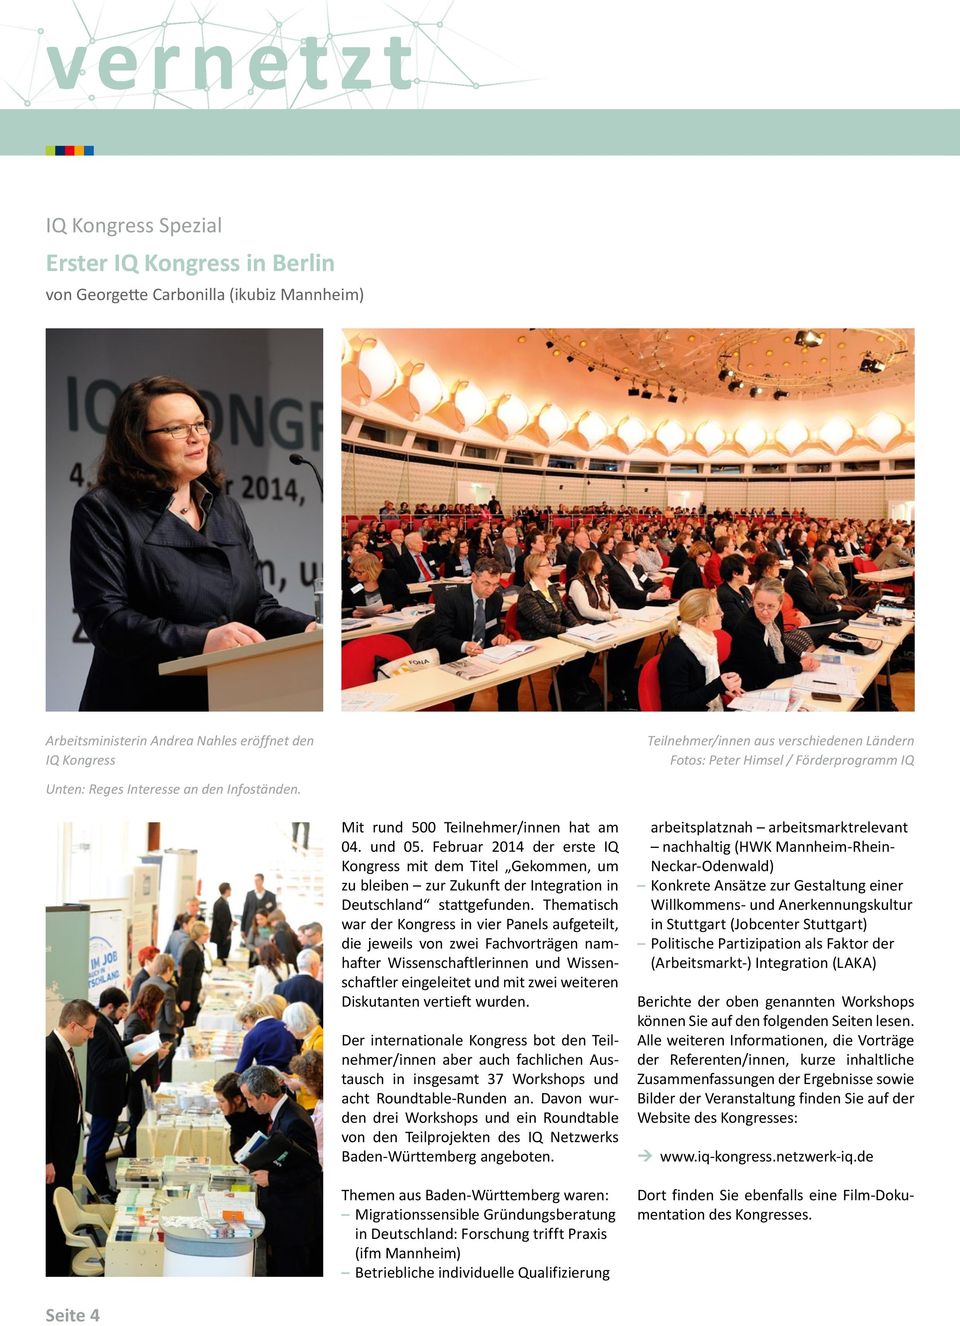 Februar 2014 der erste IQ Kongress mit dem Titel Gekommen, um zu bleiben zur Zukunft der Integration in Deutschland stattgefunden.